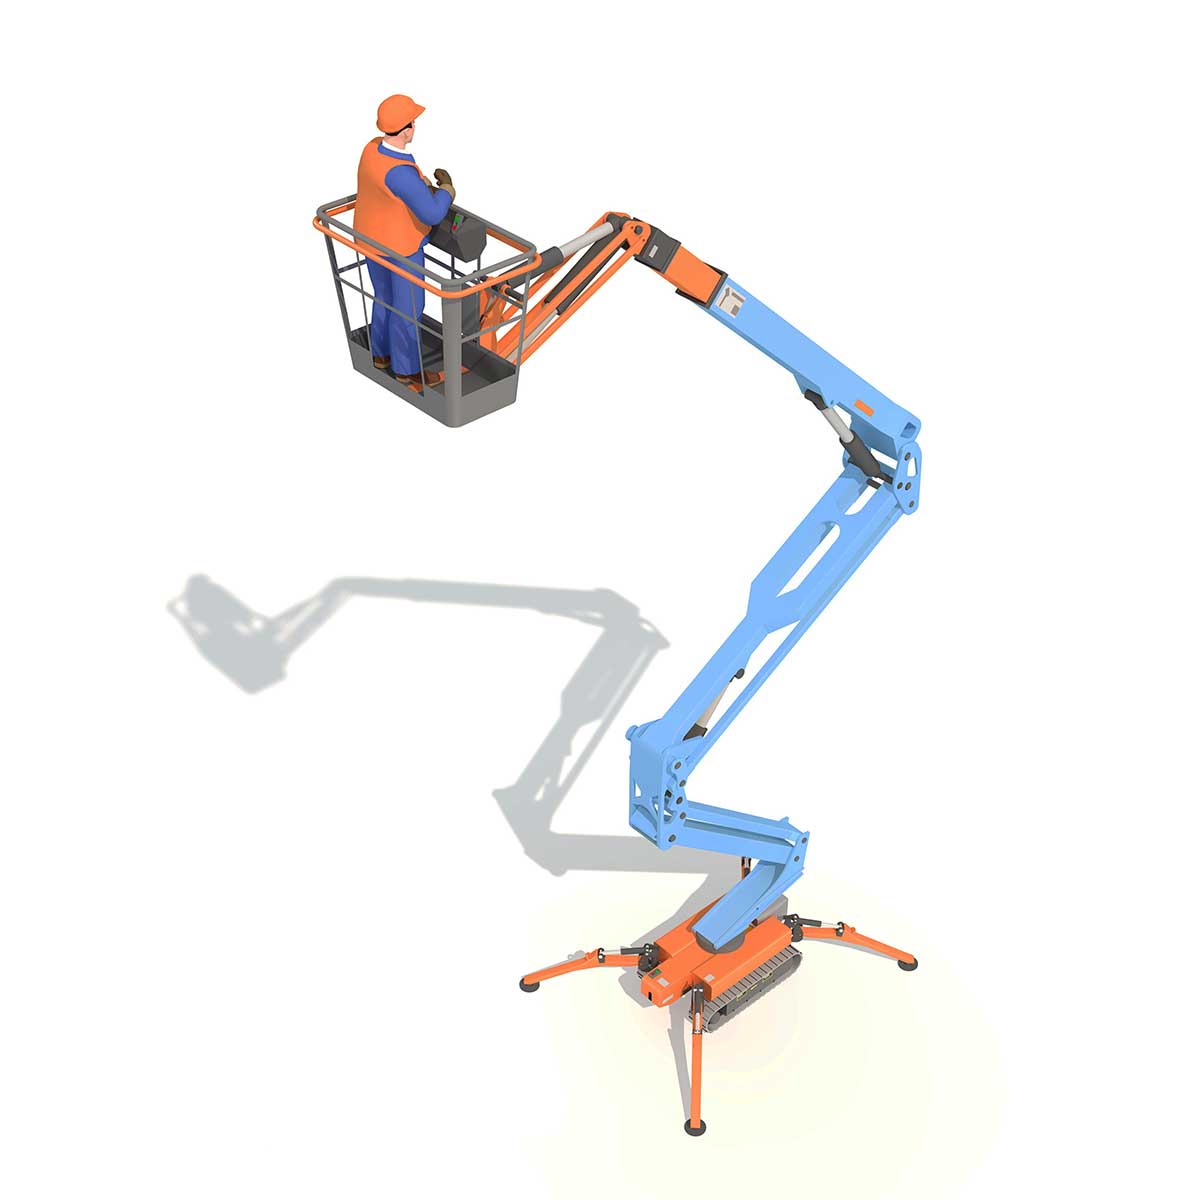 illustration of a mobile elevated platform, artist impression of a Crane.